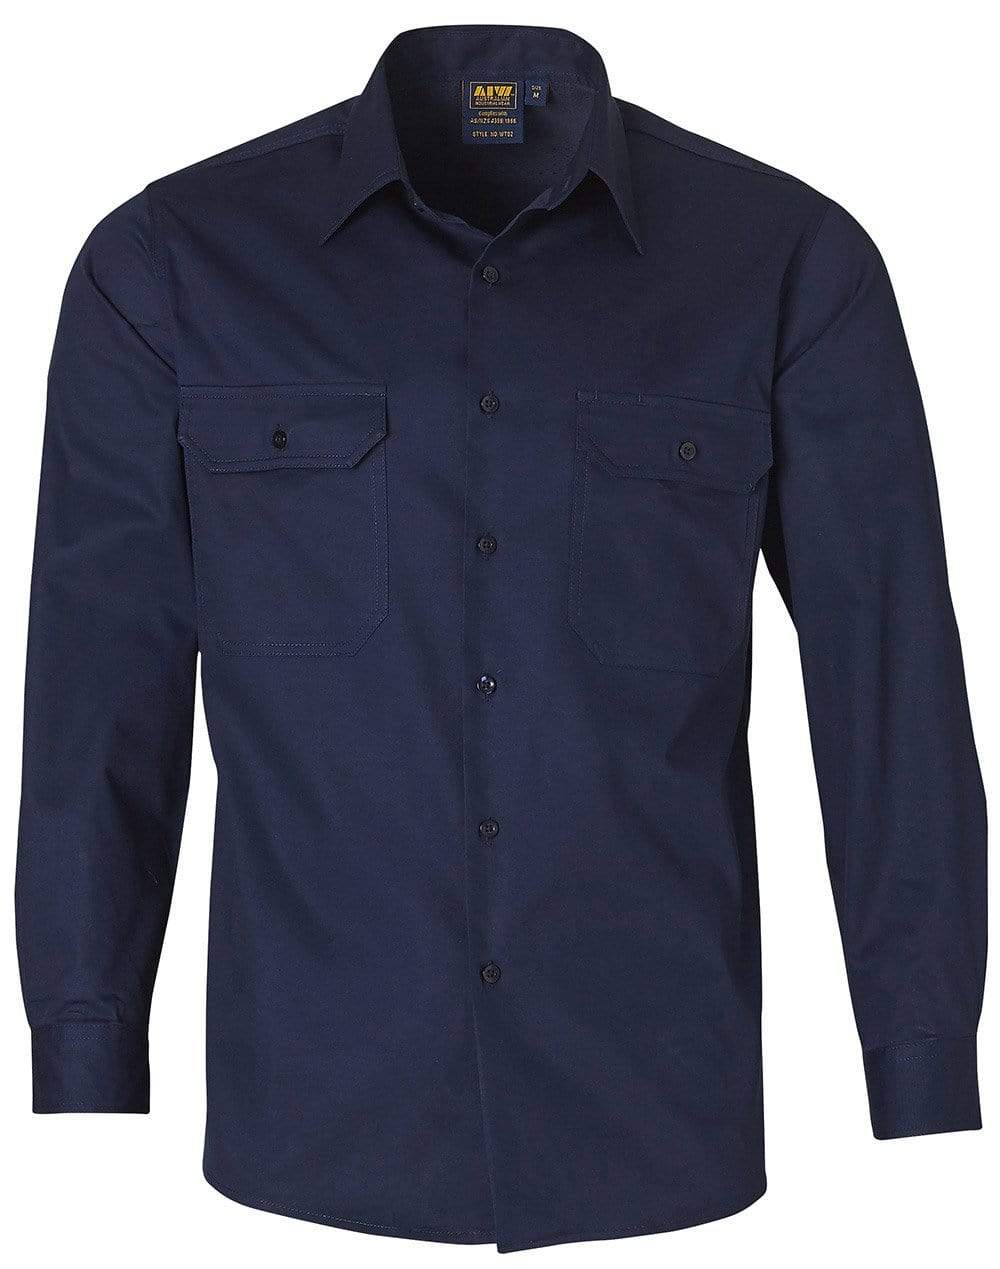 Cotton Work Shirt WT02 Work Wear Australian Industrial Wear S Navy 